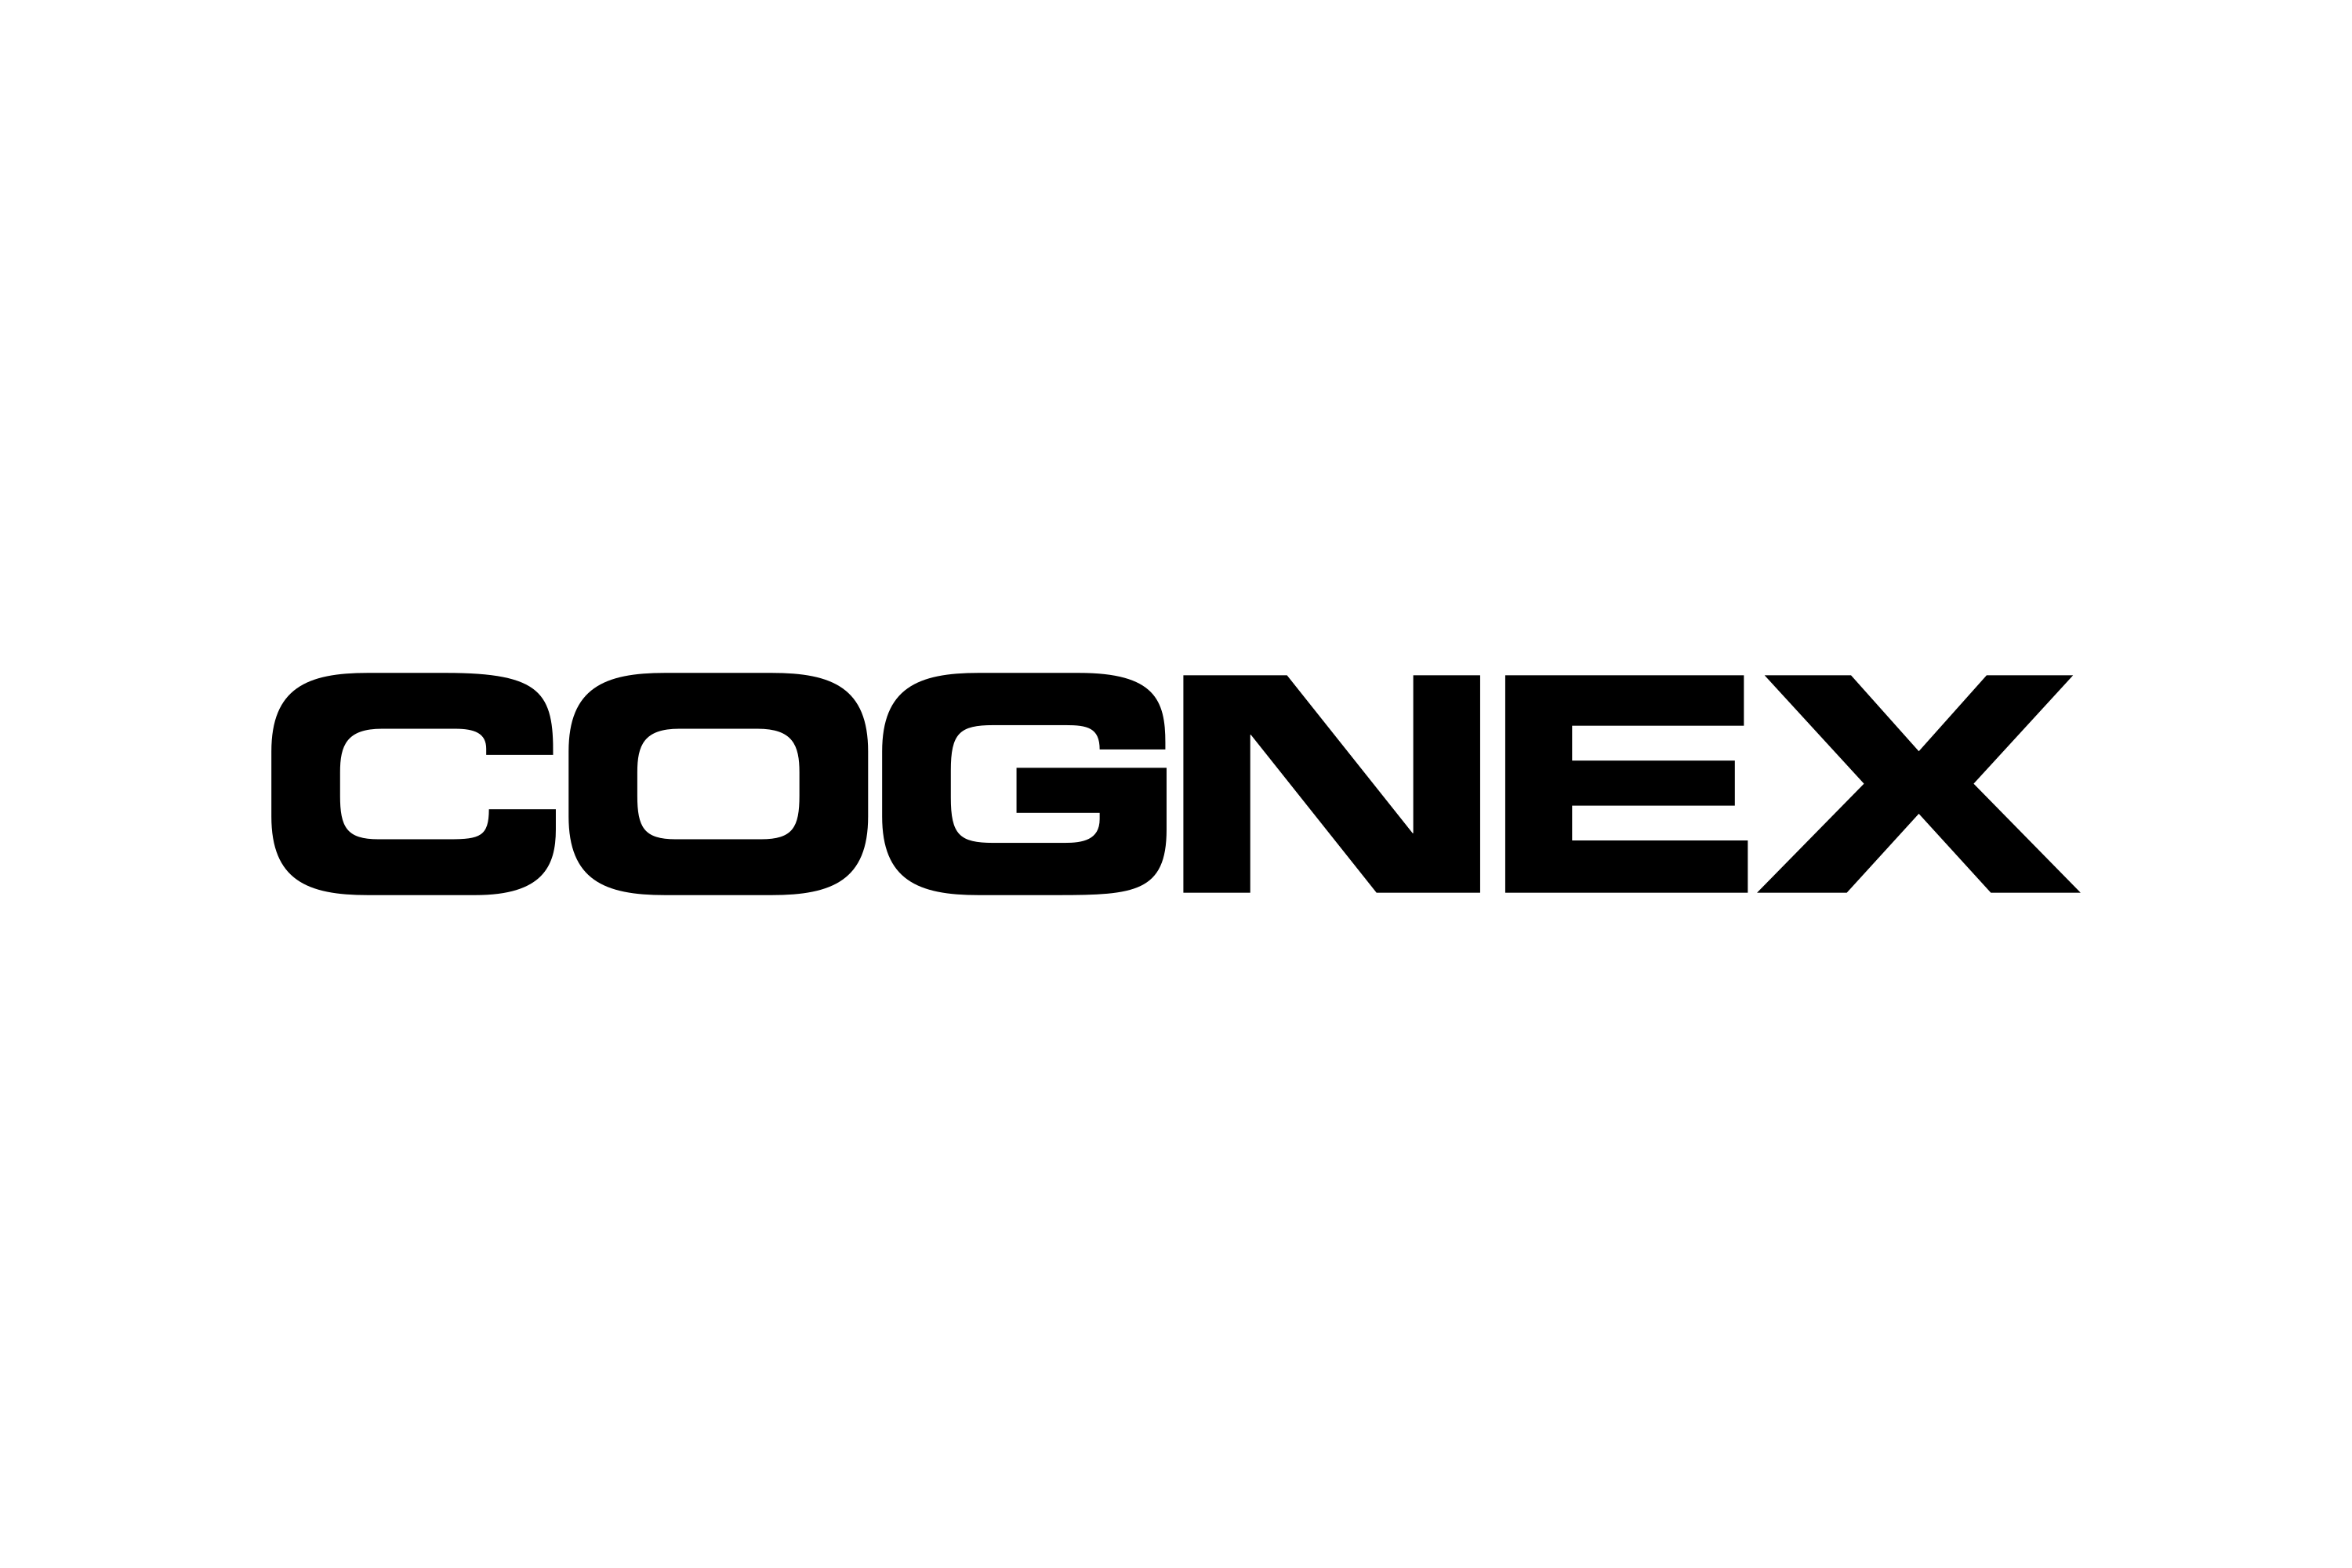 Download Cognex Corporation Logo in SVG Vector or PNG File Format